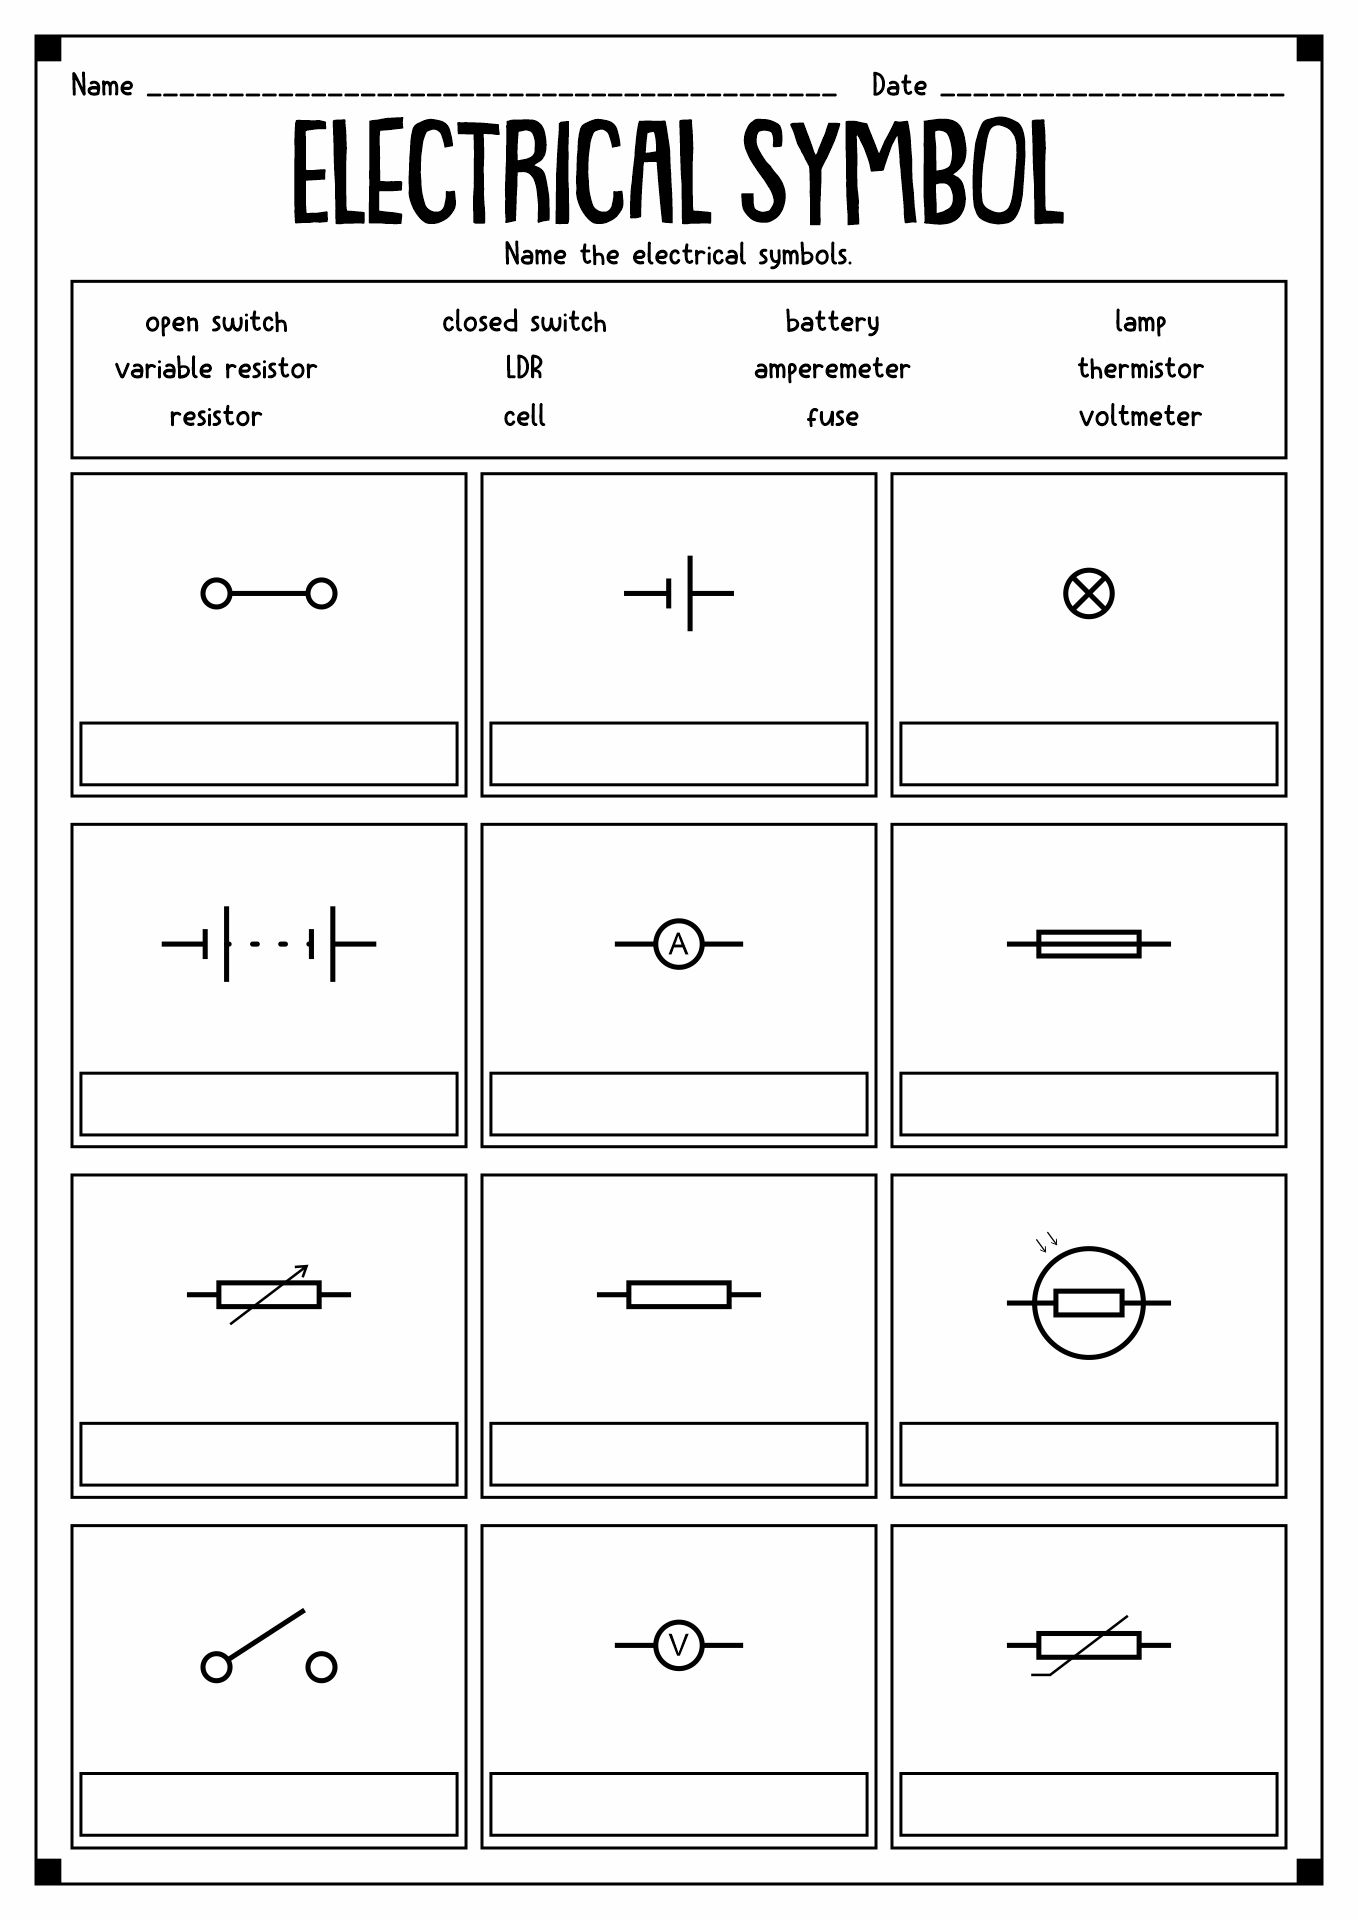 Circuit Symbols Worksheet Image